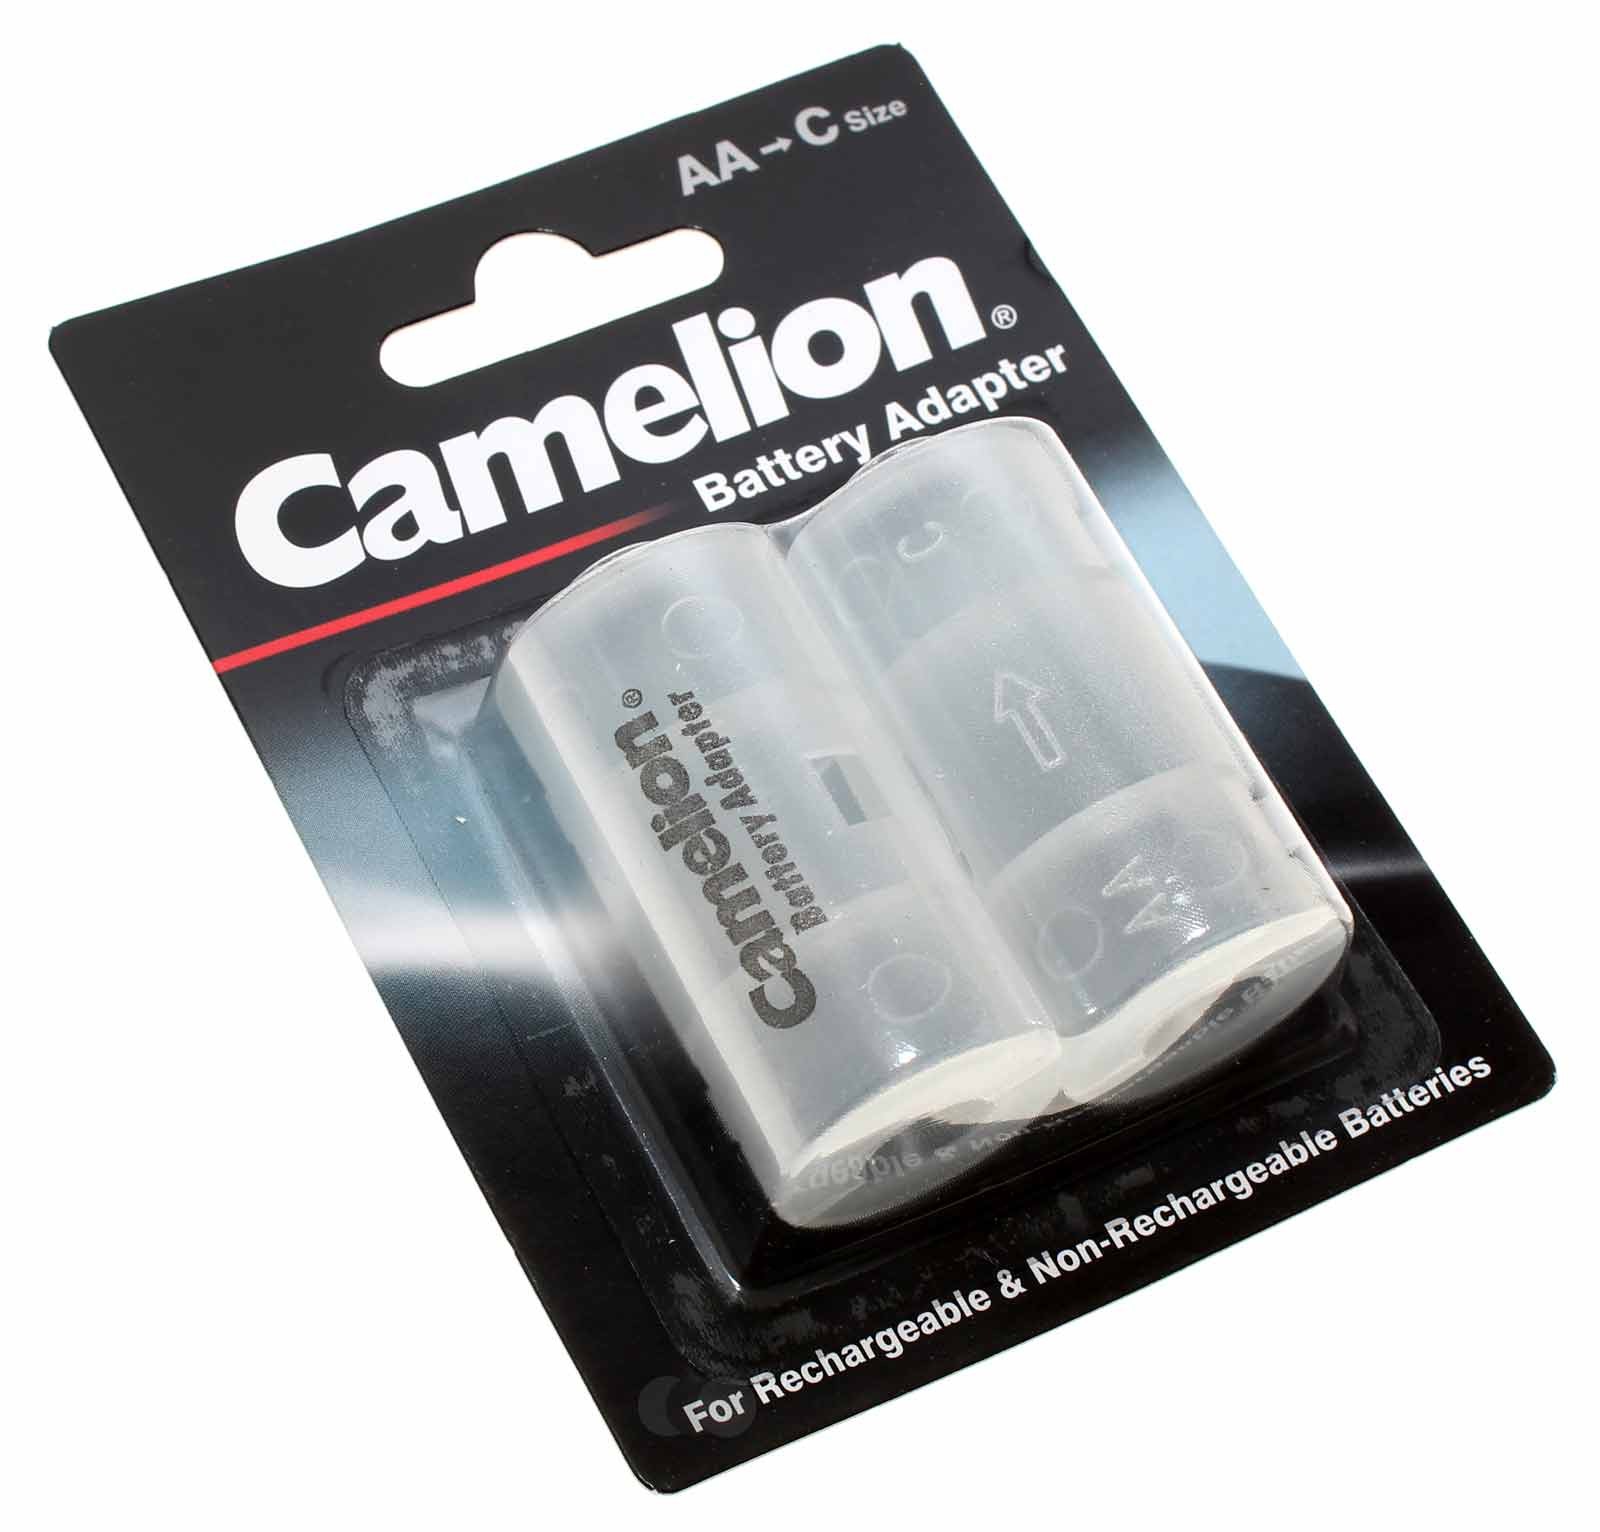 2er Pack Camelion Batterie Adapter Mignon AA auf Baby C für Akkus und Batterien